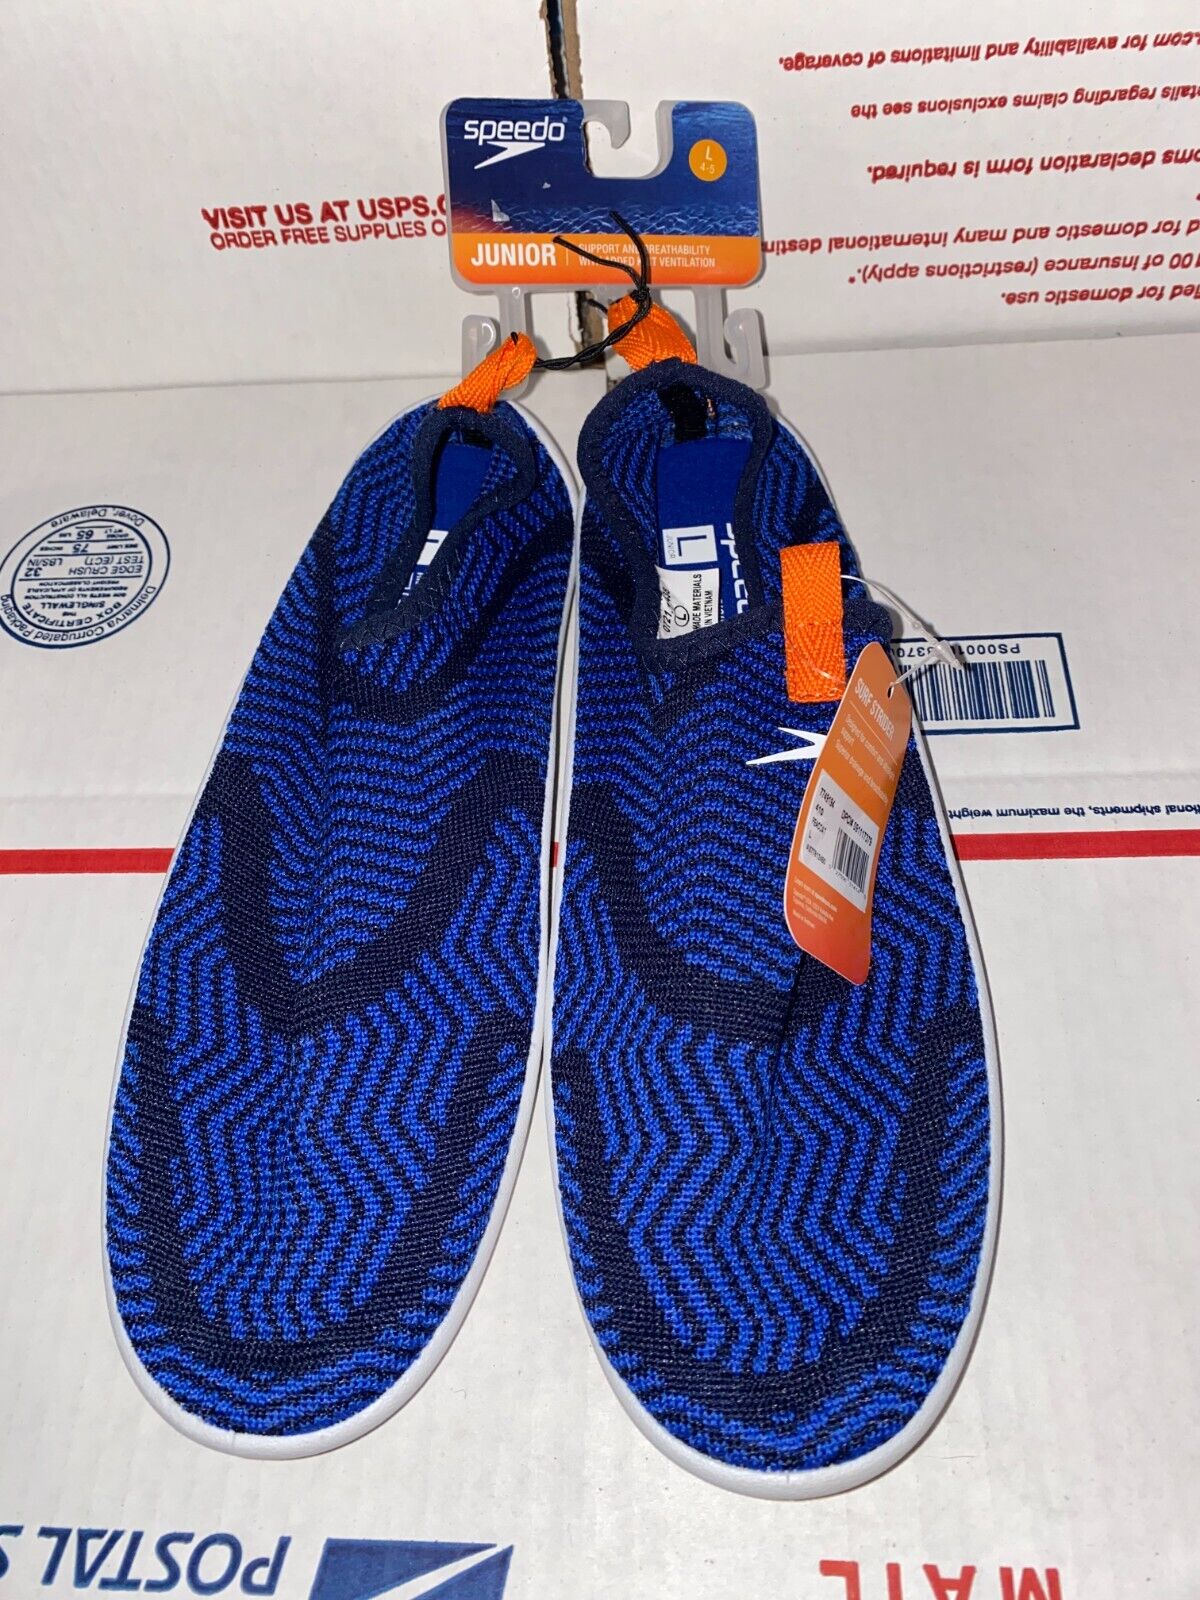 Speedo Surf Strider Ultrailight Water Shoes Junior Boys Size L 4-5 Blue Swim